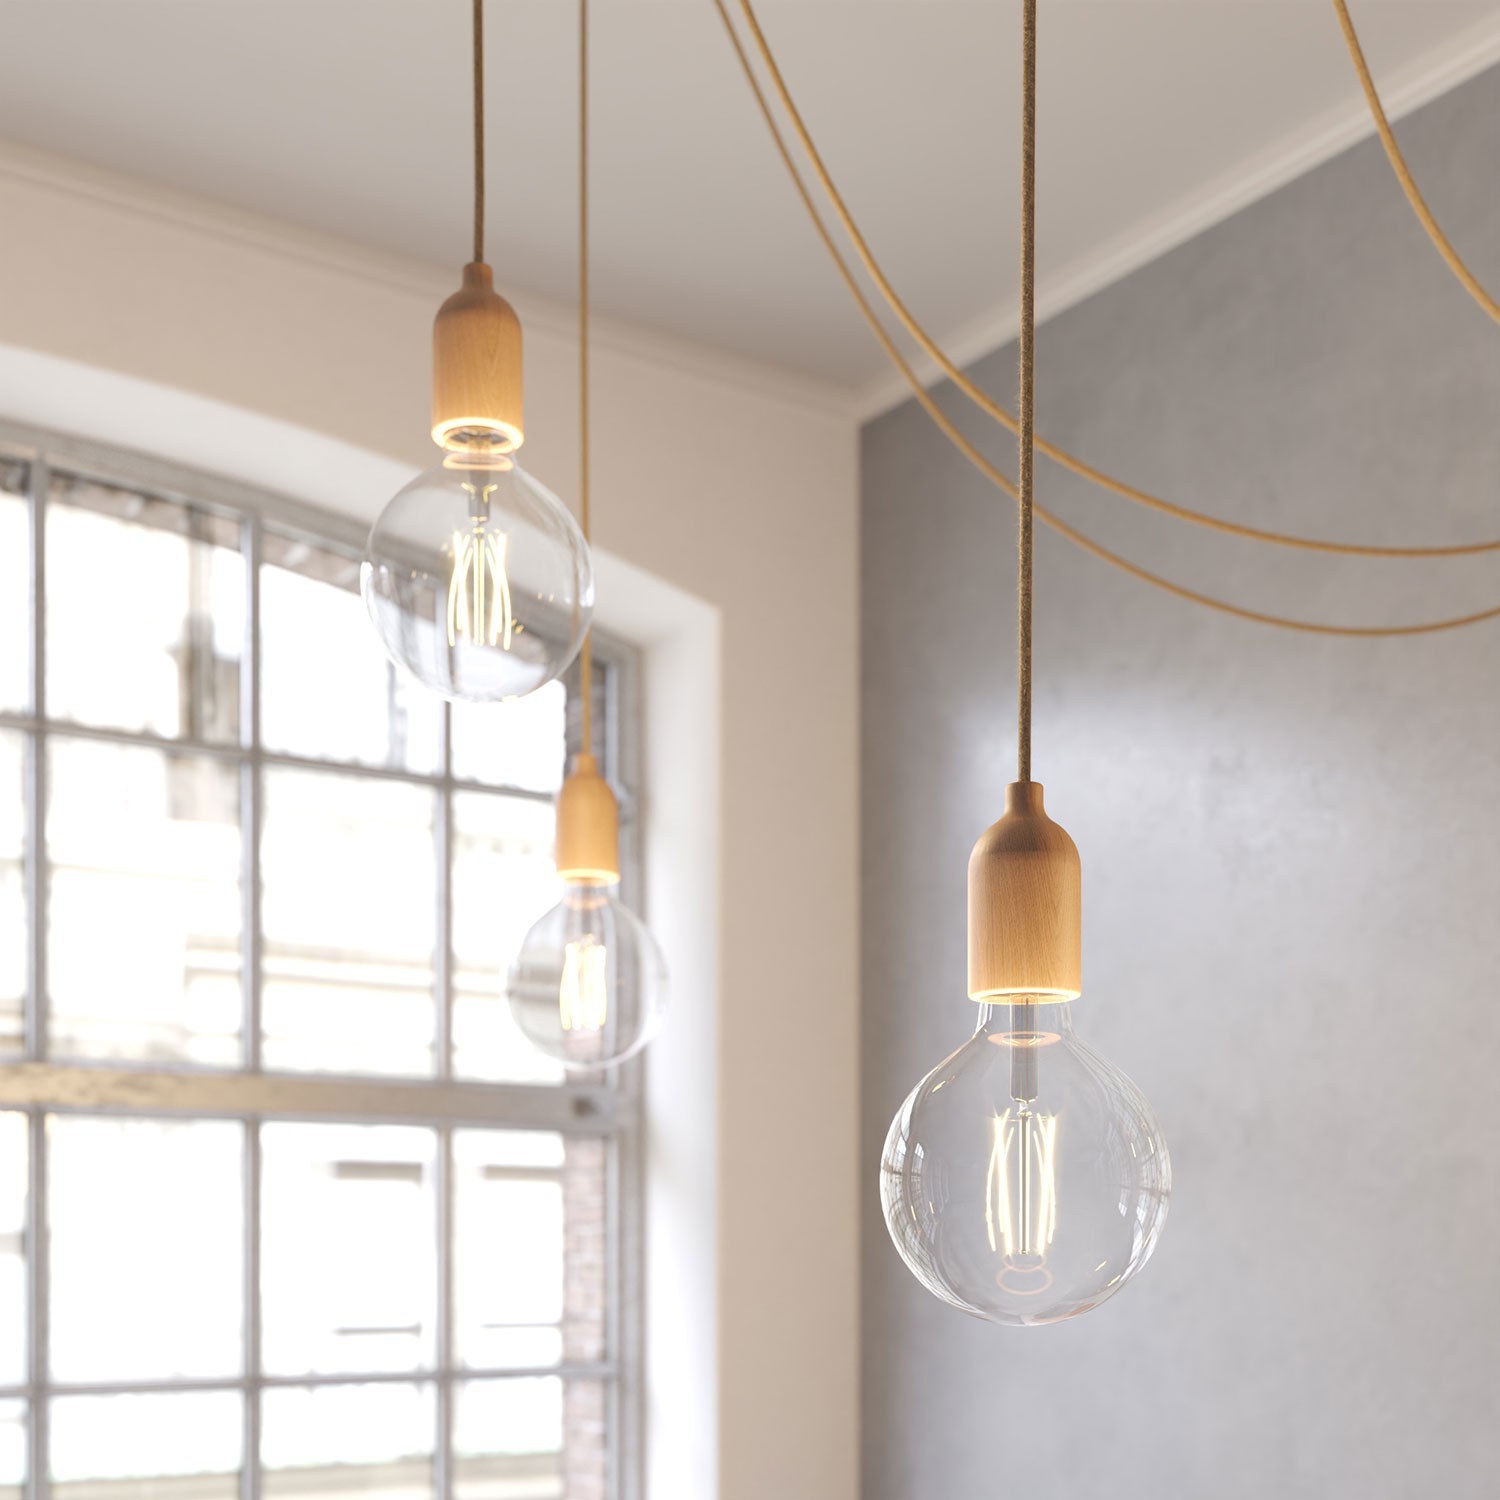 Spider - Multi-hanglamp Made in Italy met 4 lichtpunten, compleet met strijkijzerkabel en houten afwerkingen